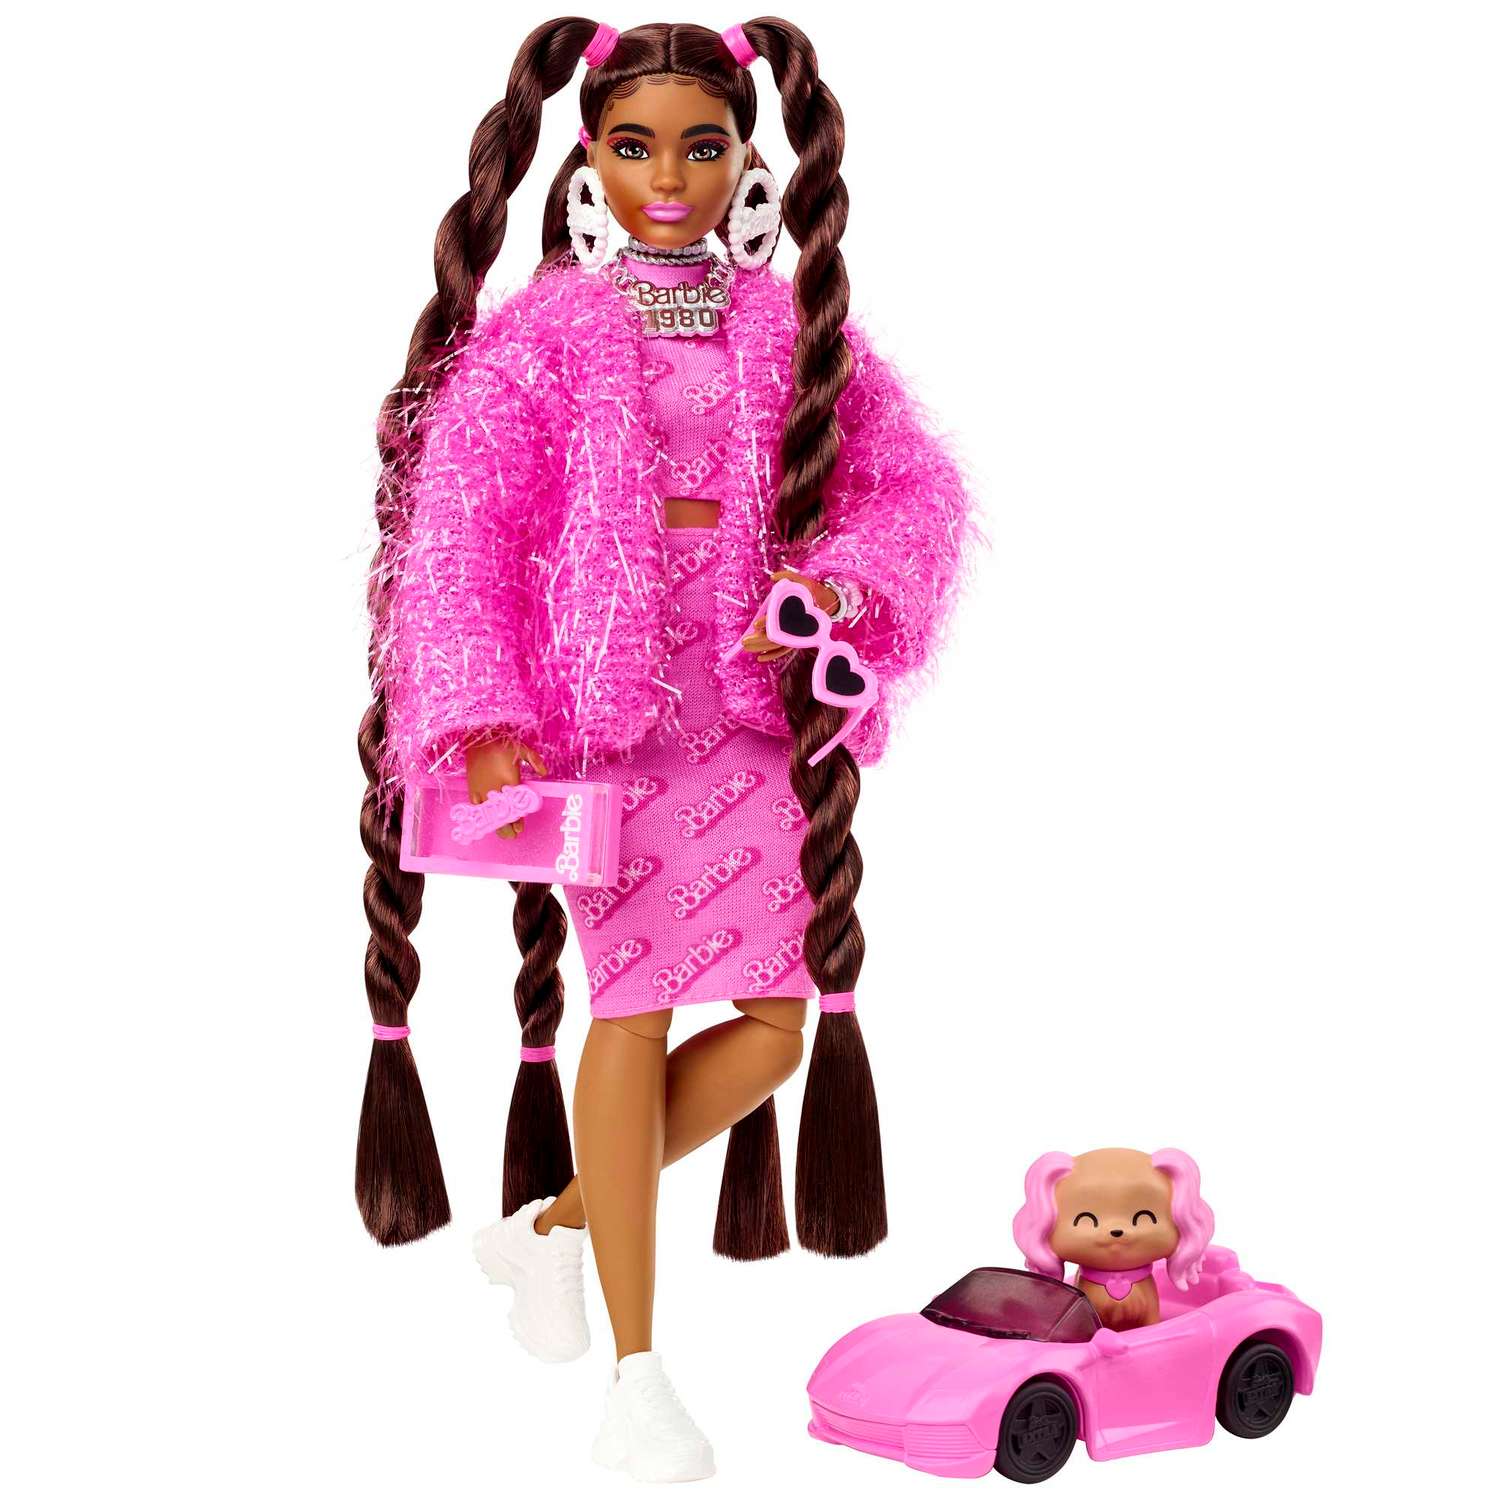 Как я в Детский мир ходила за куклой Барби) И что там нашла?